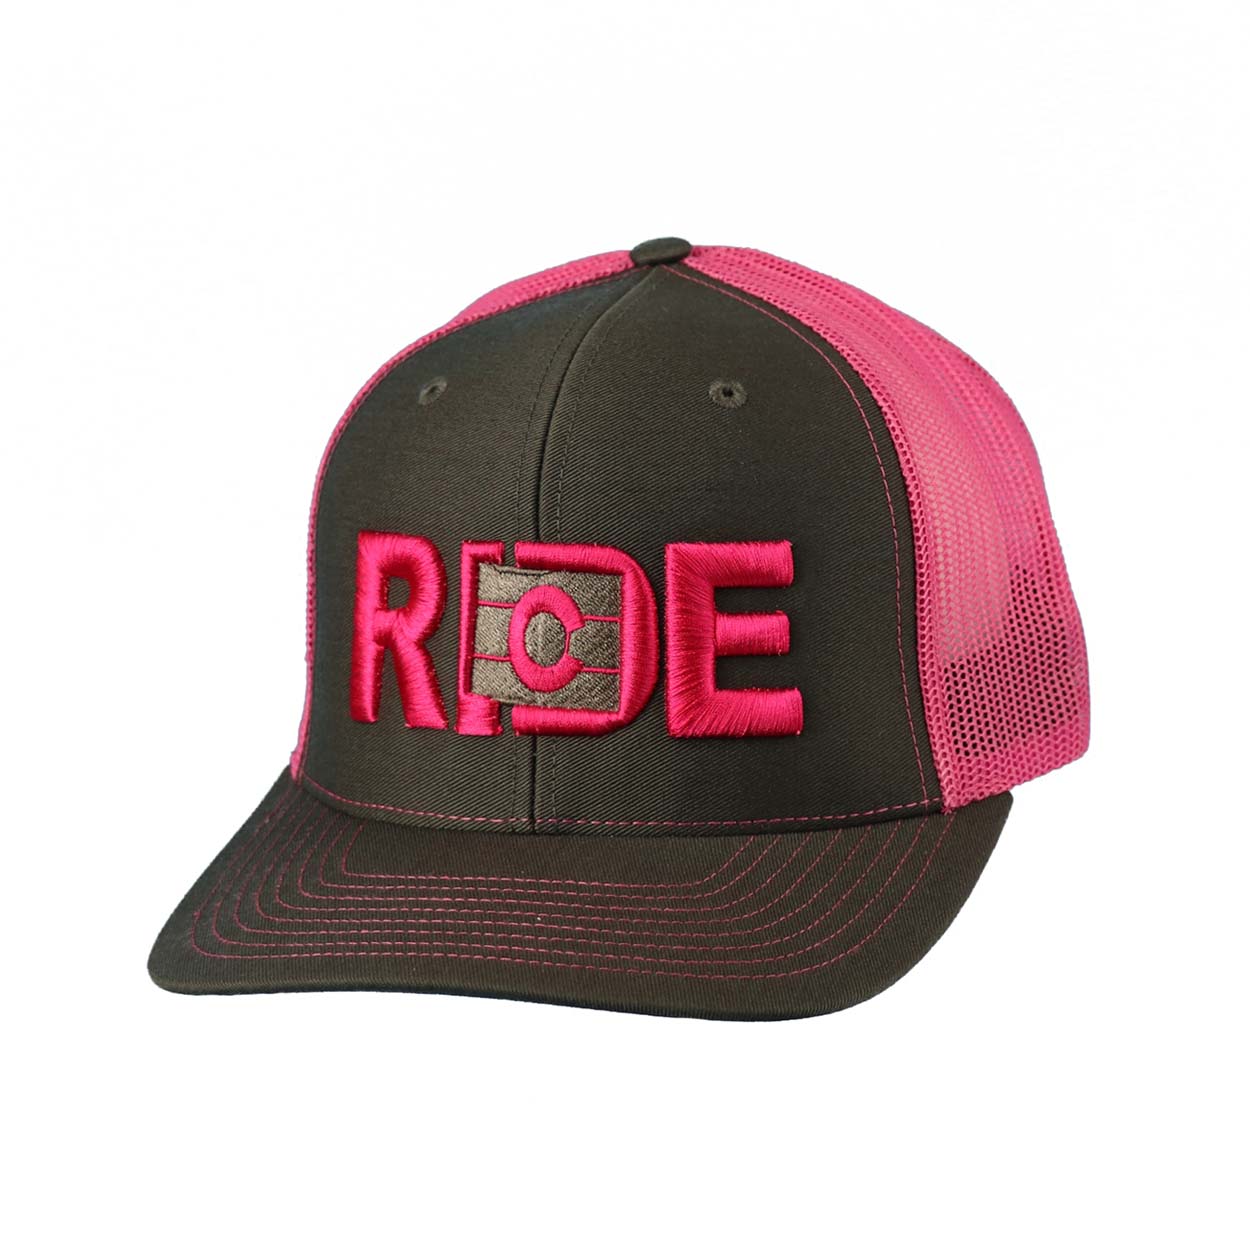 Ride Colorado Classic Embroidered Snapback Trucker Hat Gray/Fuschia